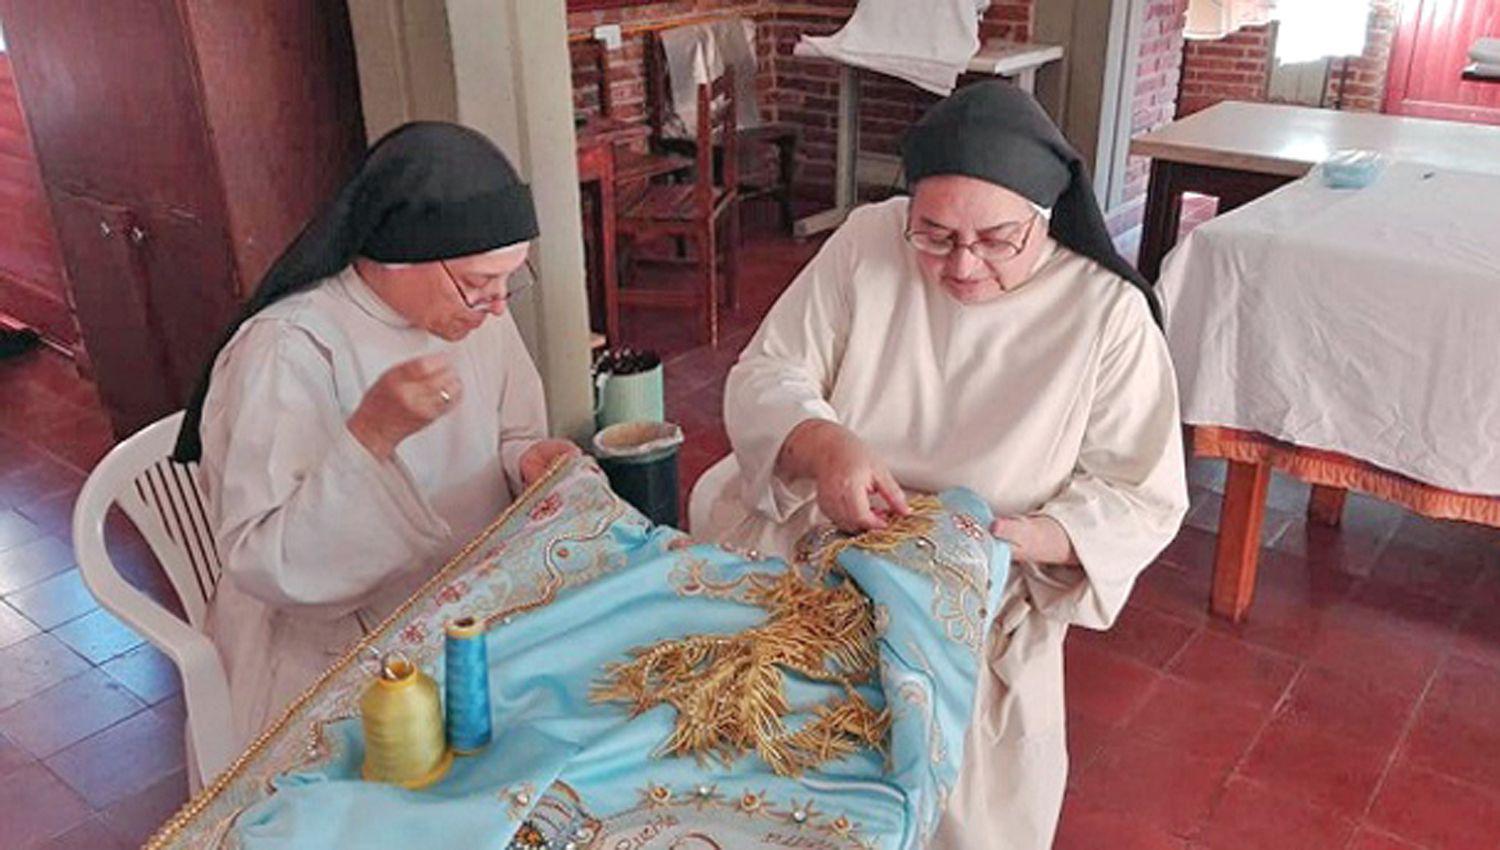 La prenda fue realizada por las monjas dominicas y
ofrecida a la Virgen en nombre de los consagrados de Catamarca